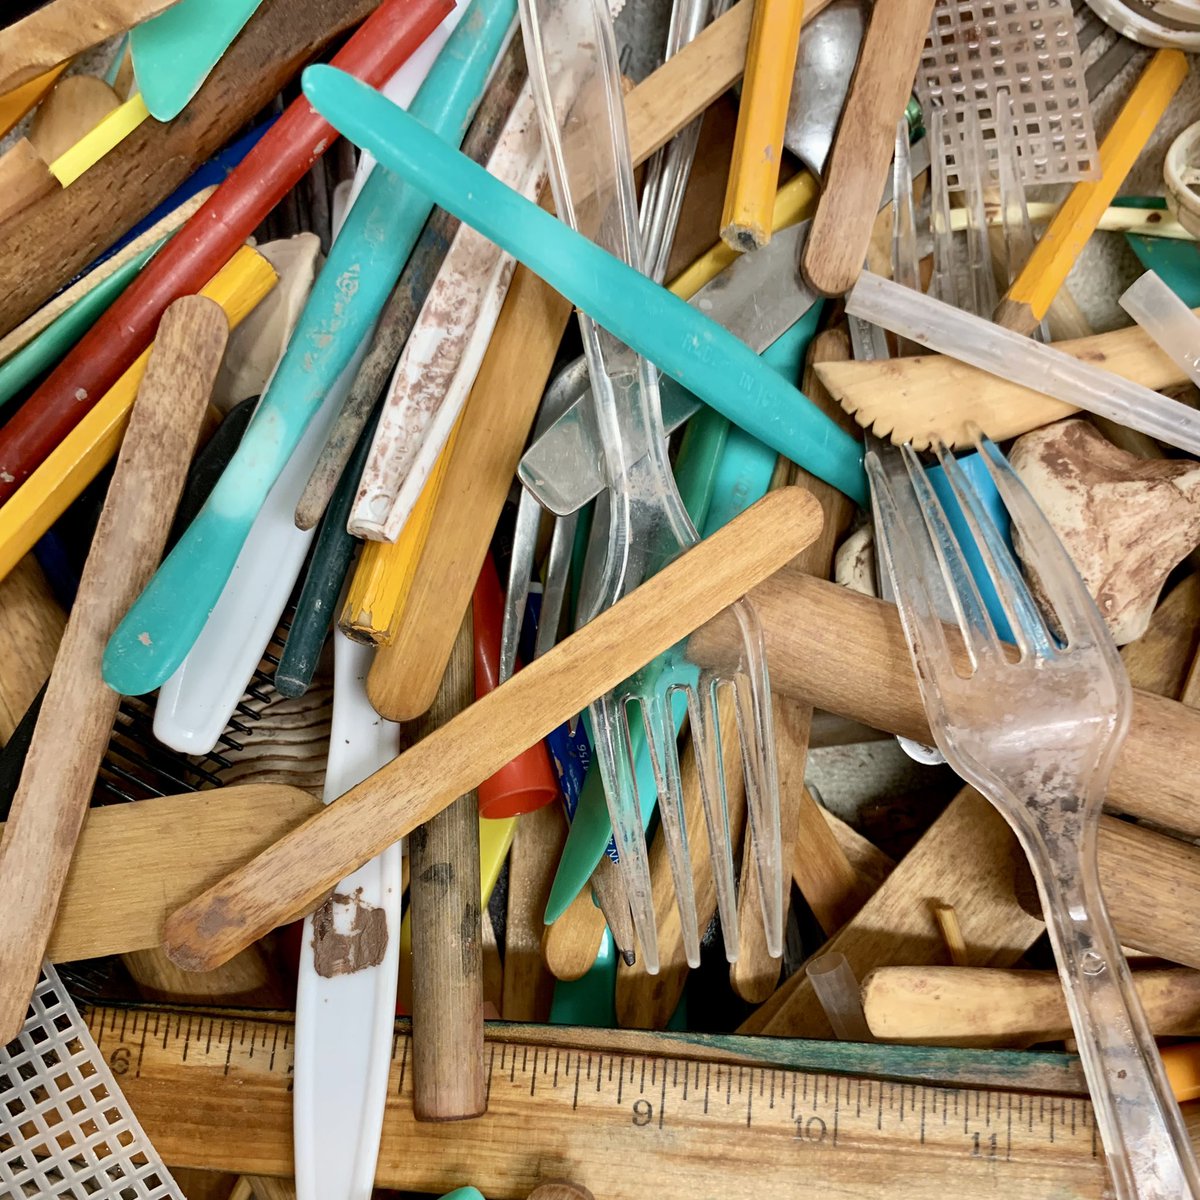 Les outils sont propres et l'argile est dans le four ! Passons au vitrage de nos projets d'argile après les vacances de printemps. #claydays #KWBpride @APSArts https://t.co/gBE0yg5lTP